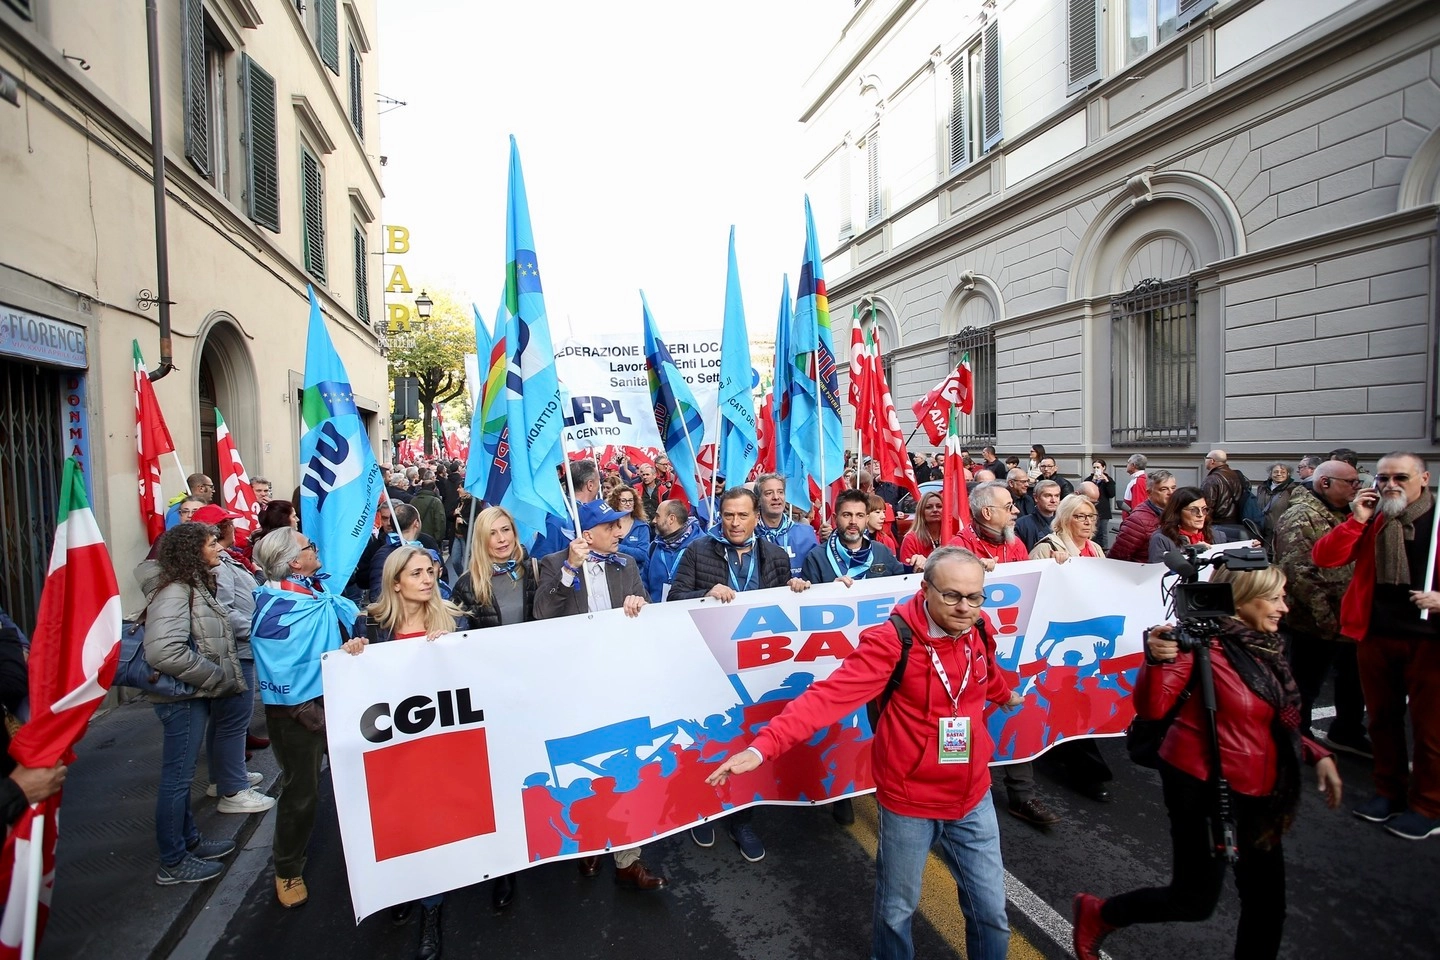 PRESSPHOTO Firenze, sciopero nazionale e corteo sindacati cgil uil
Giuseppe Cabras/New Press Photo